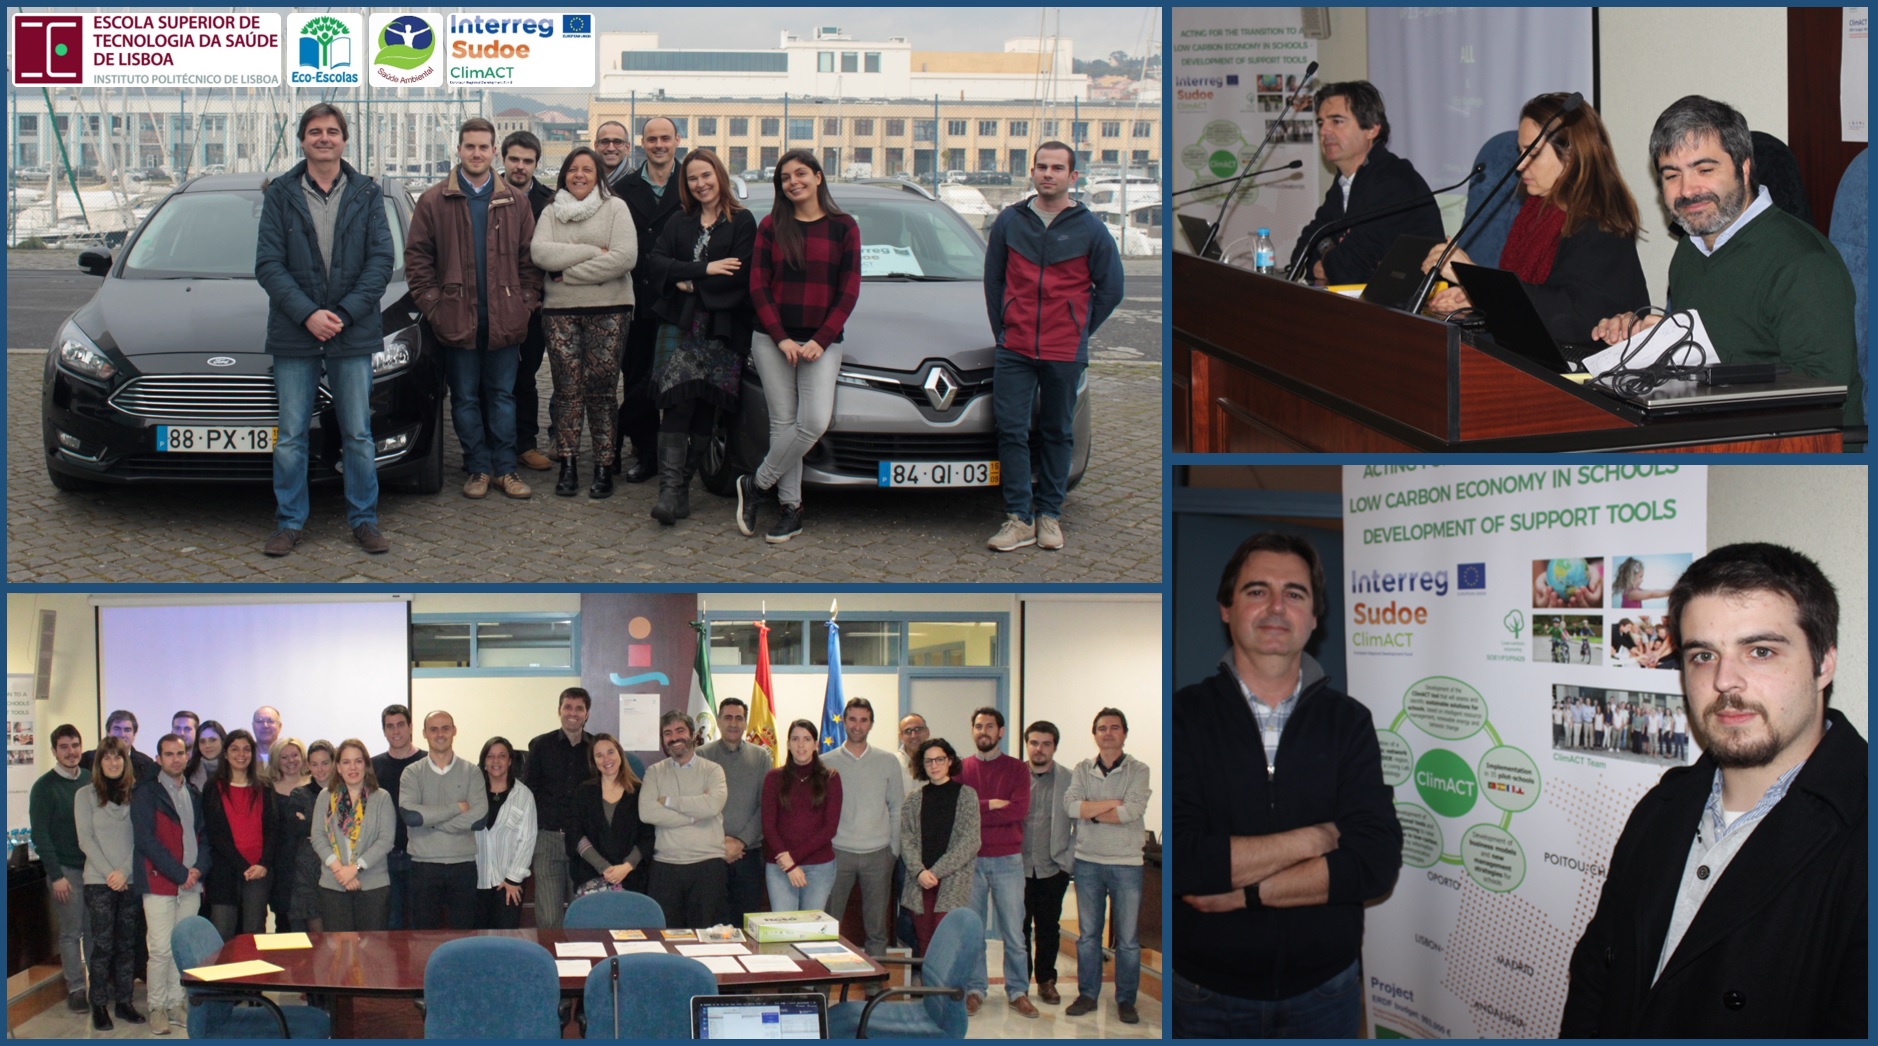 Saúde Ambiental da ESTeSL participa em reunião internacional do projeto Interreg Sudoe ClimACT